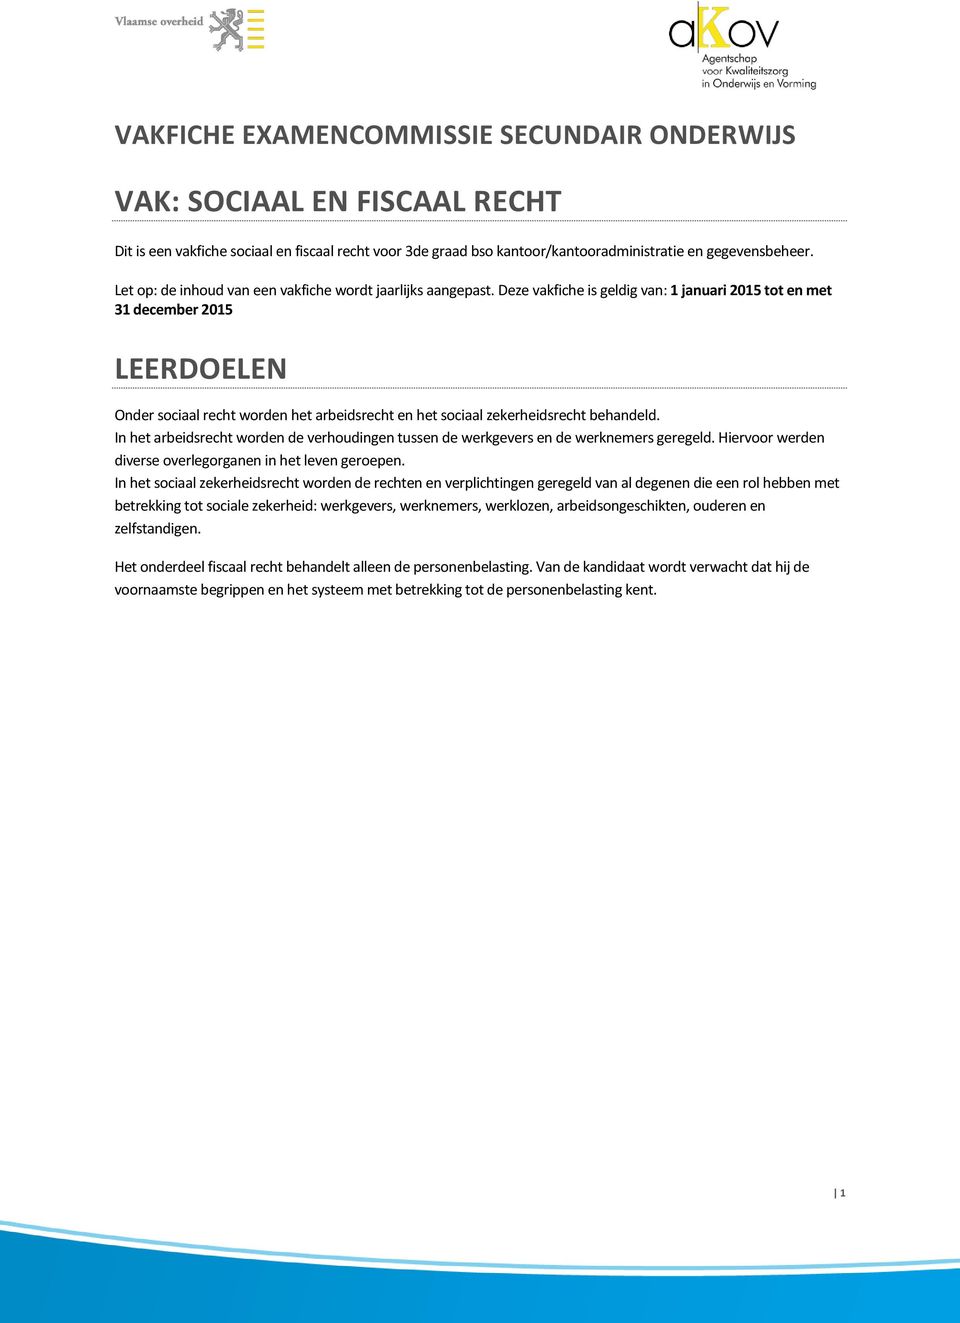 Deze vakfiche is geldig van: 1 januari 2015 tot en met 31 december 2015 LEERDOELEN Onder sociaal recht worden het arbeidsrecht en het sociaal zekerheidsrecht behandeld.